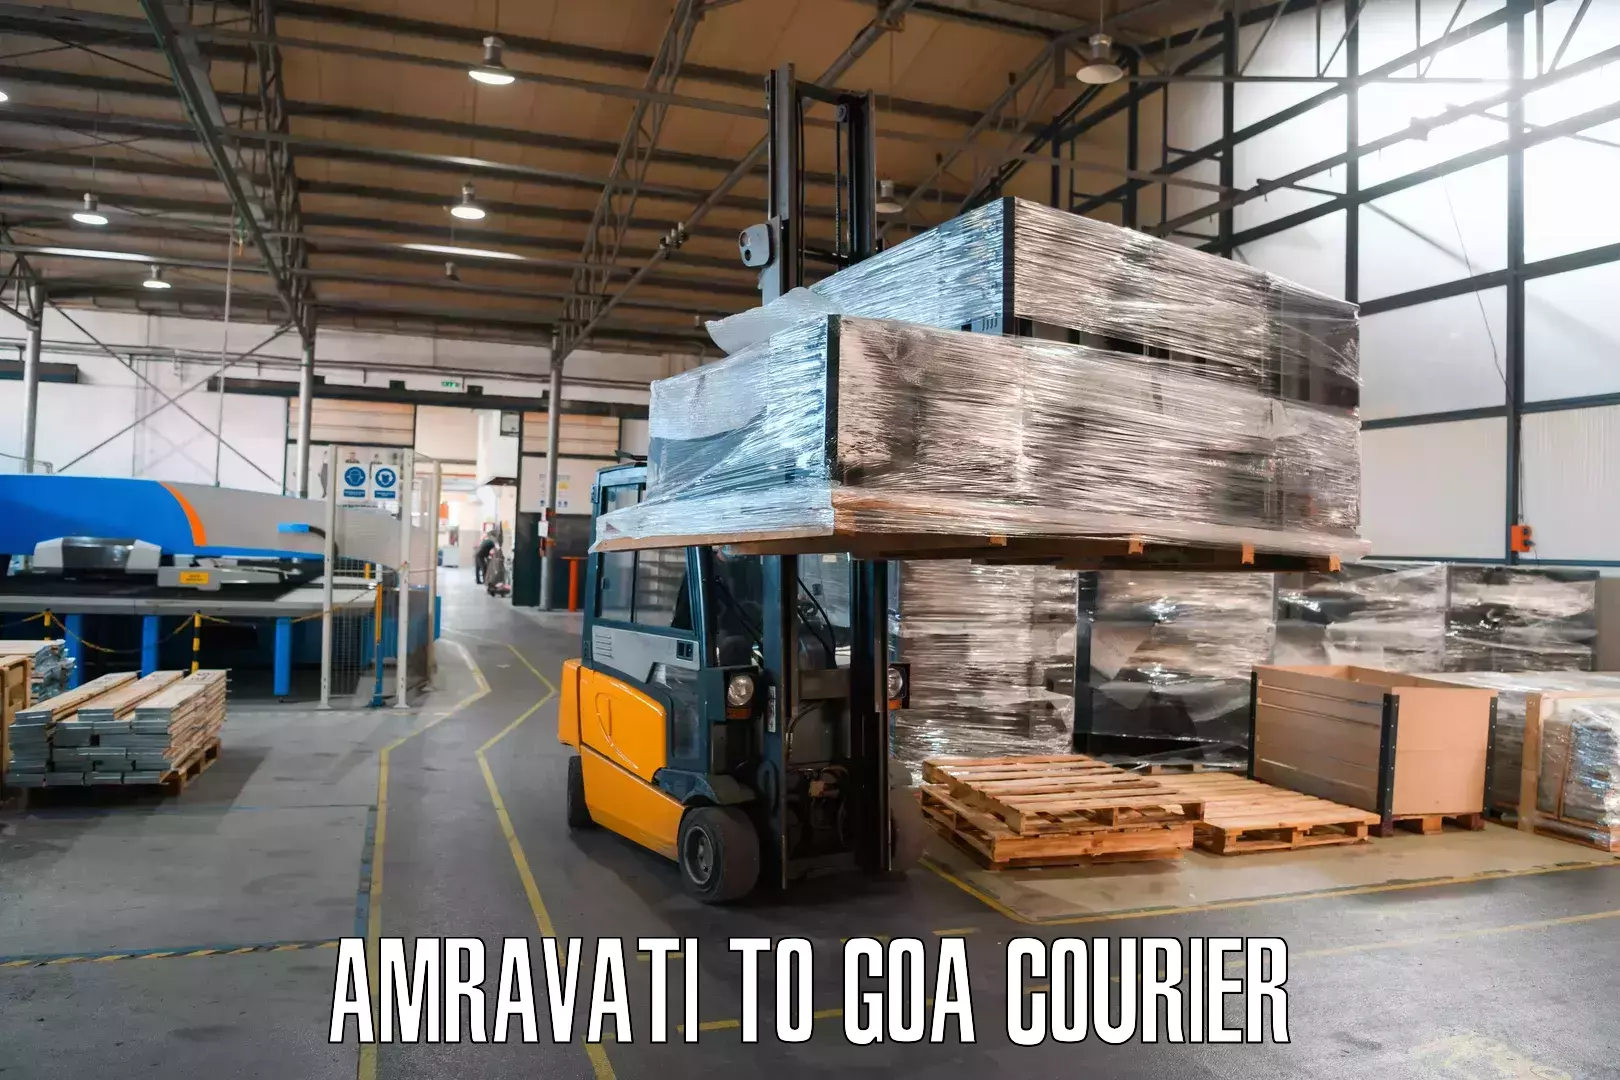 Cargo delivery service Amravati to Vasco da Gama